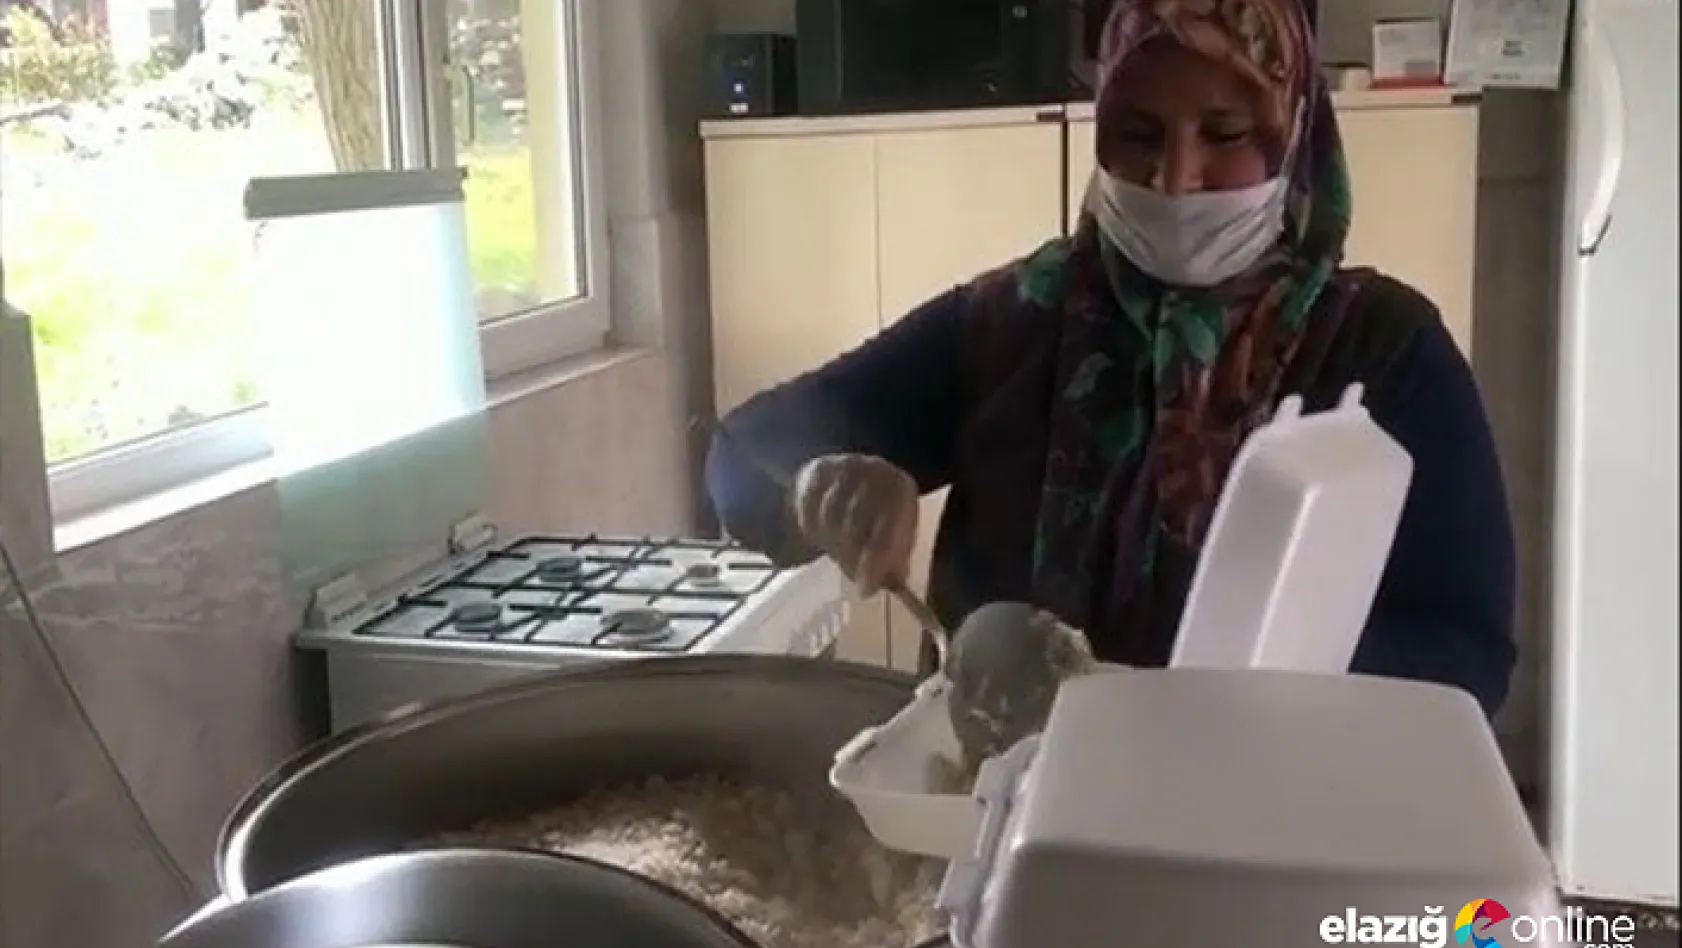 Kaymakamlık koordinesinde hazırlanan iftar yemekleri sıcak sıcak evlere ulaştırılıyor